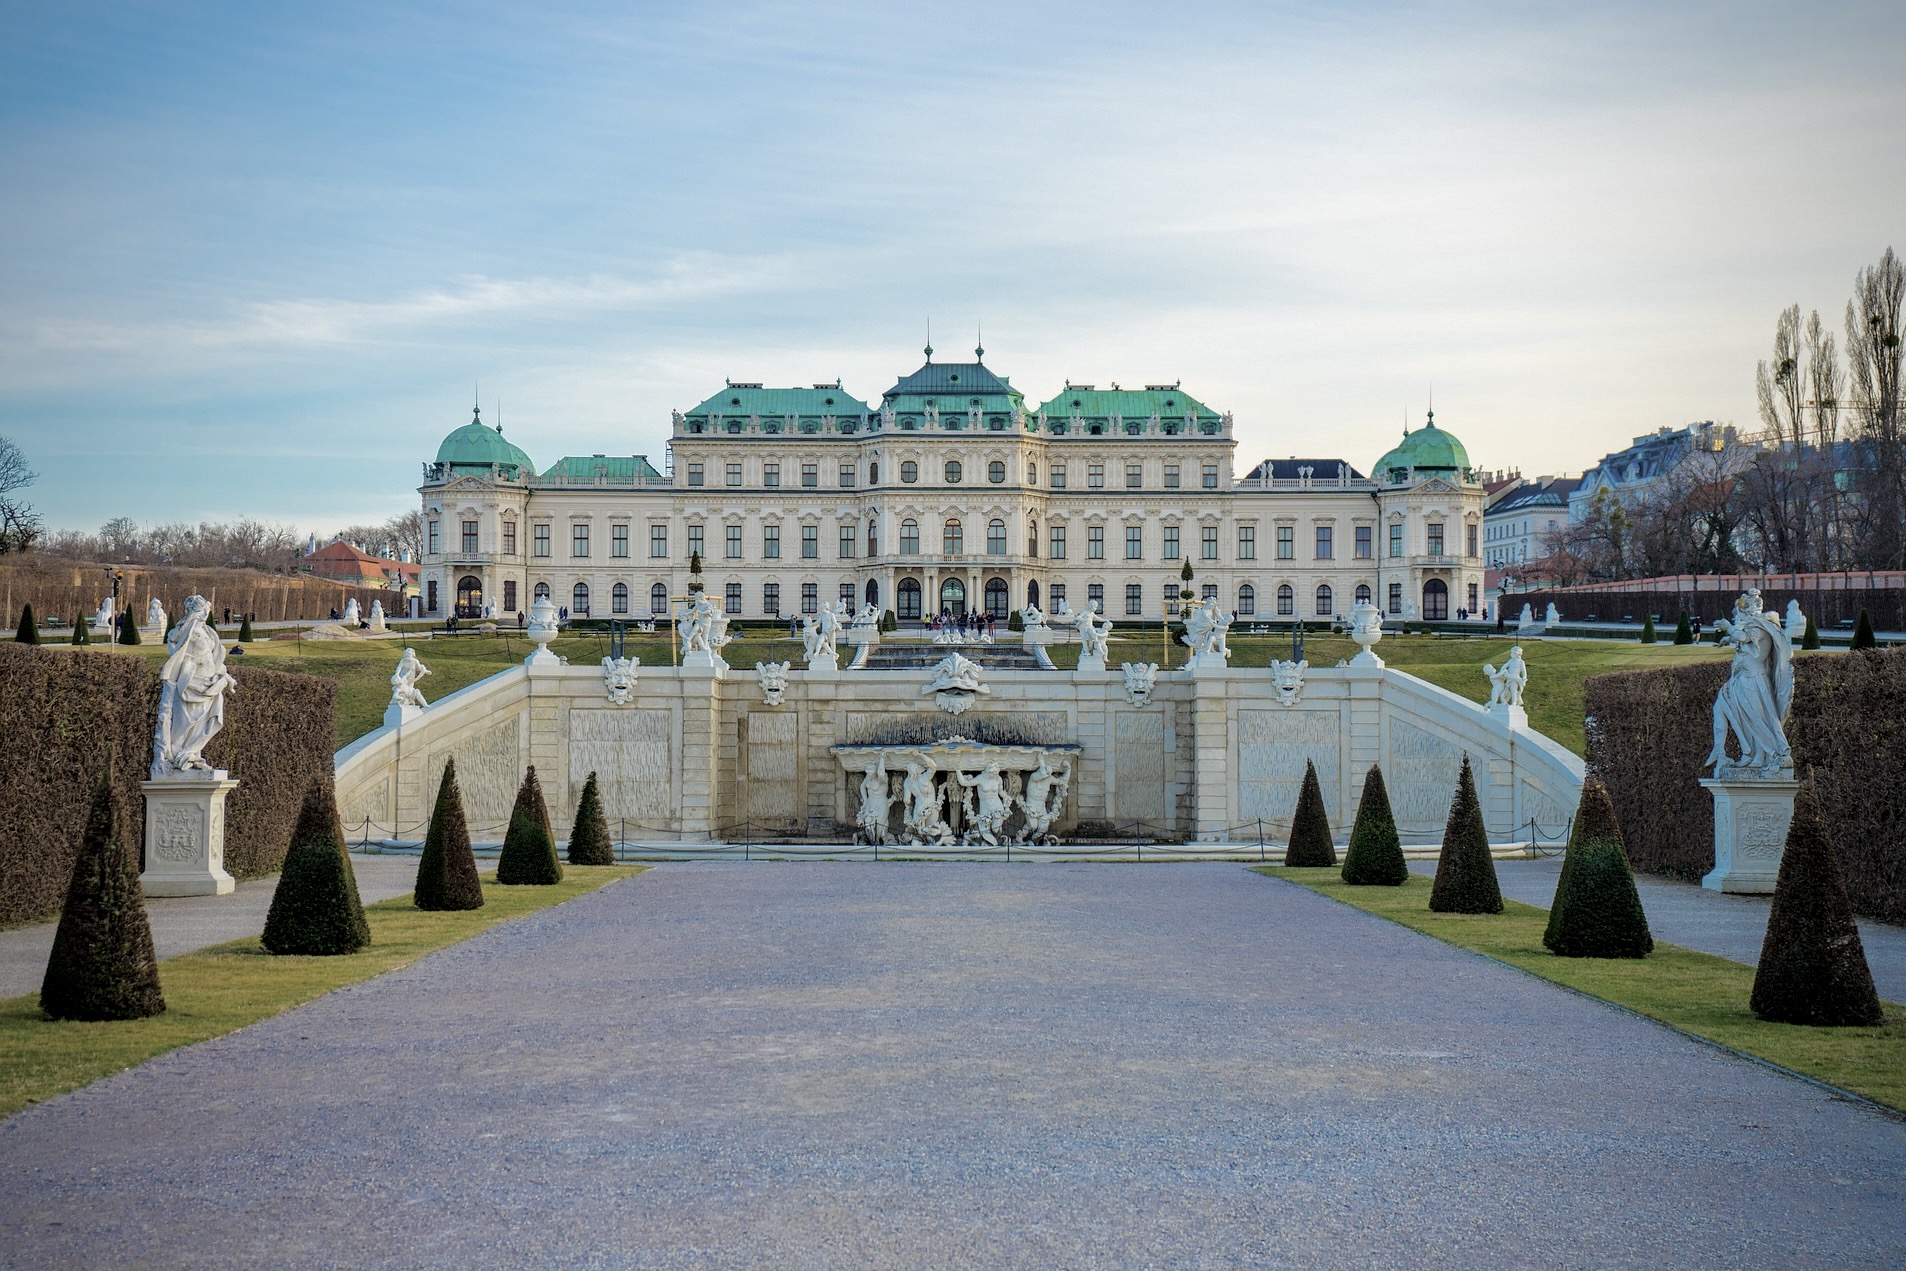 Wien Sehenswürdigkeiten wie das Museum und Schloss Belvedere sind ein Highlight